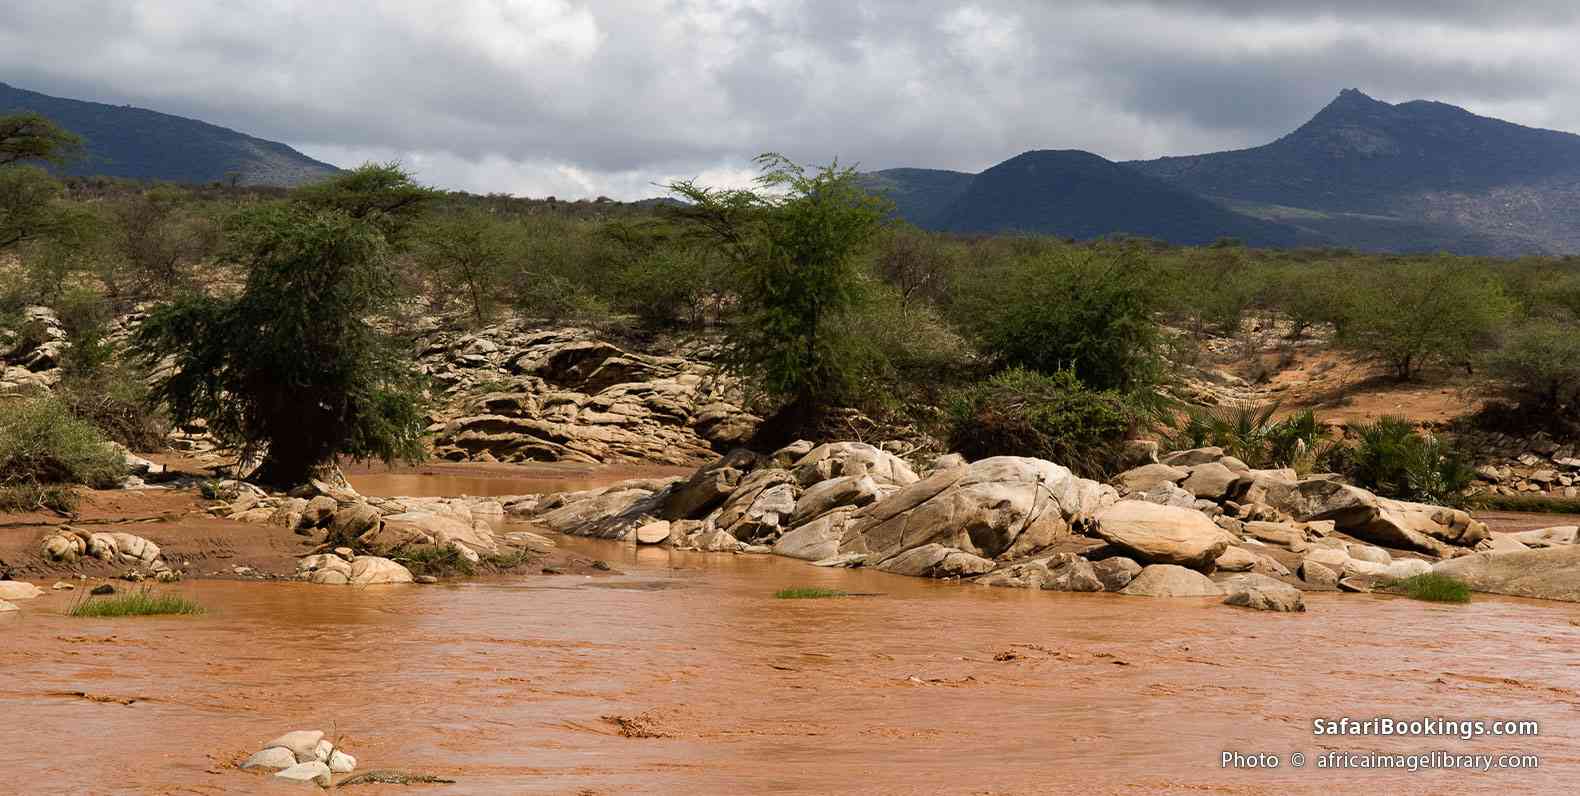 Nile crocodile on the Ewaso Ngiro River